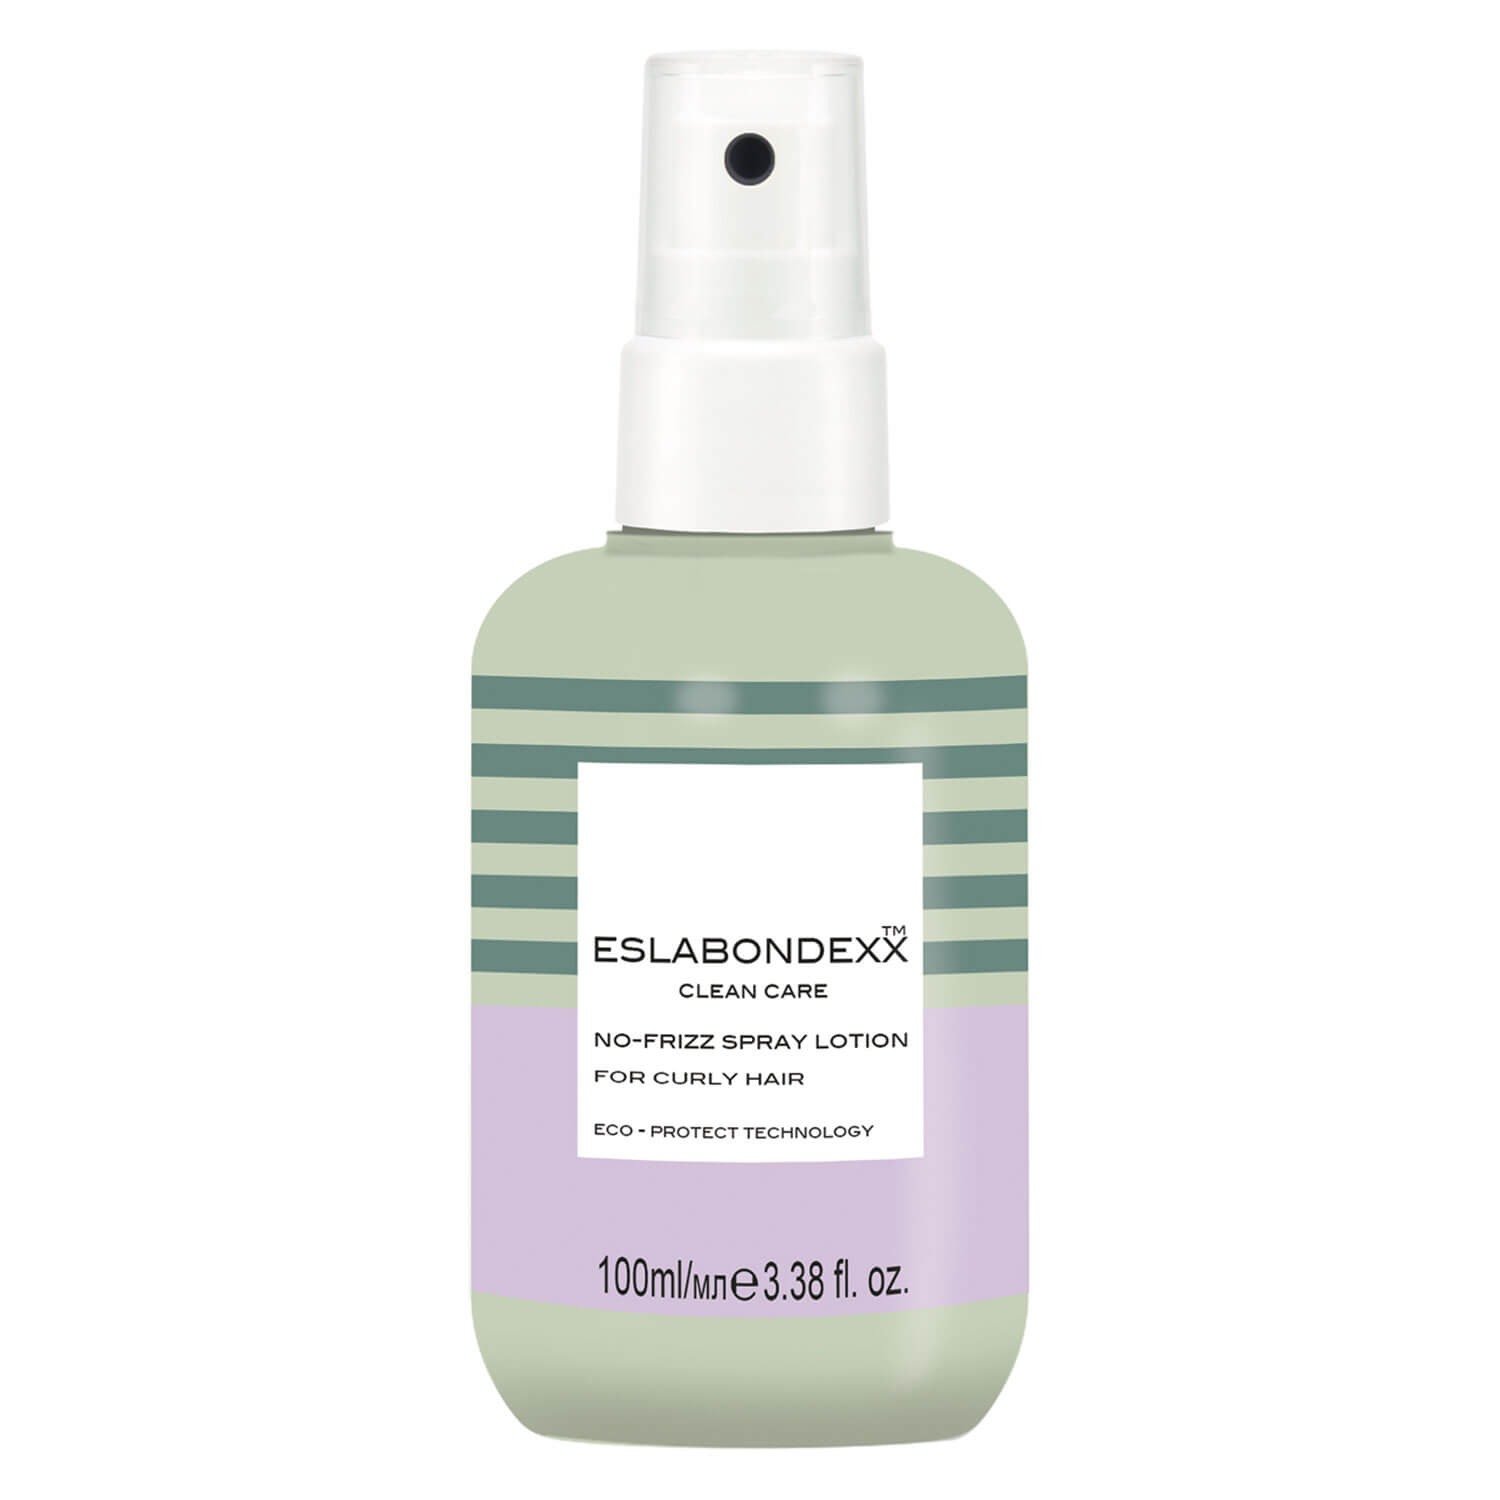 ESLABONDEXX ™ Clean Care No-Frizz Spray Lotion - mléko na kudrnaté vlasy, 100ml